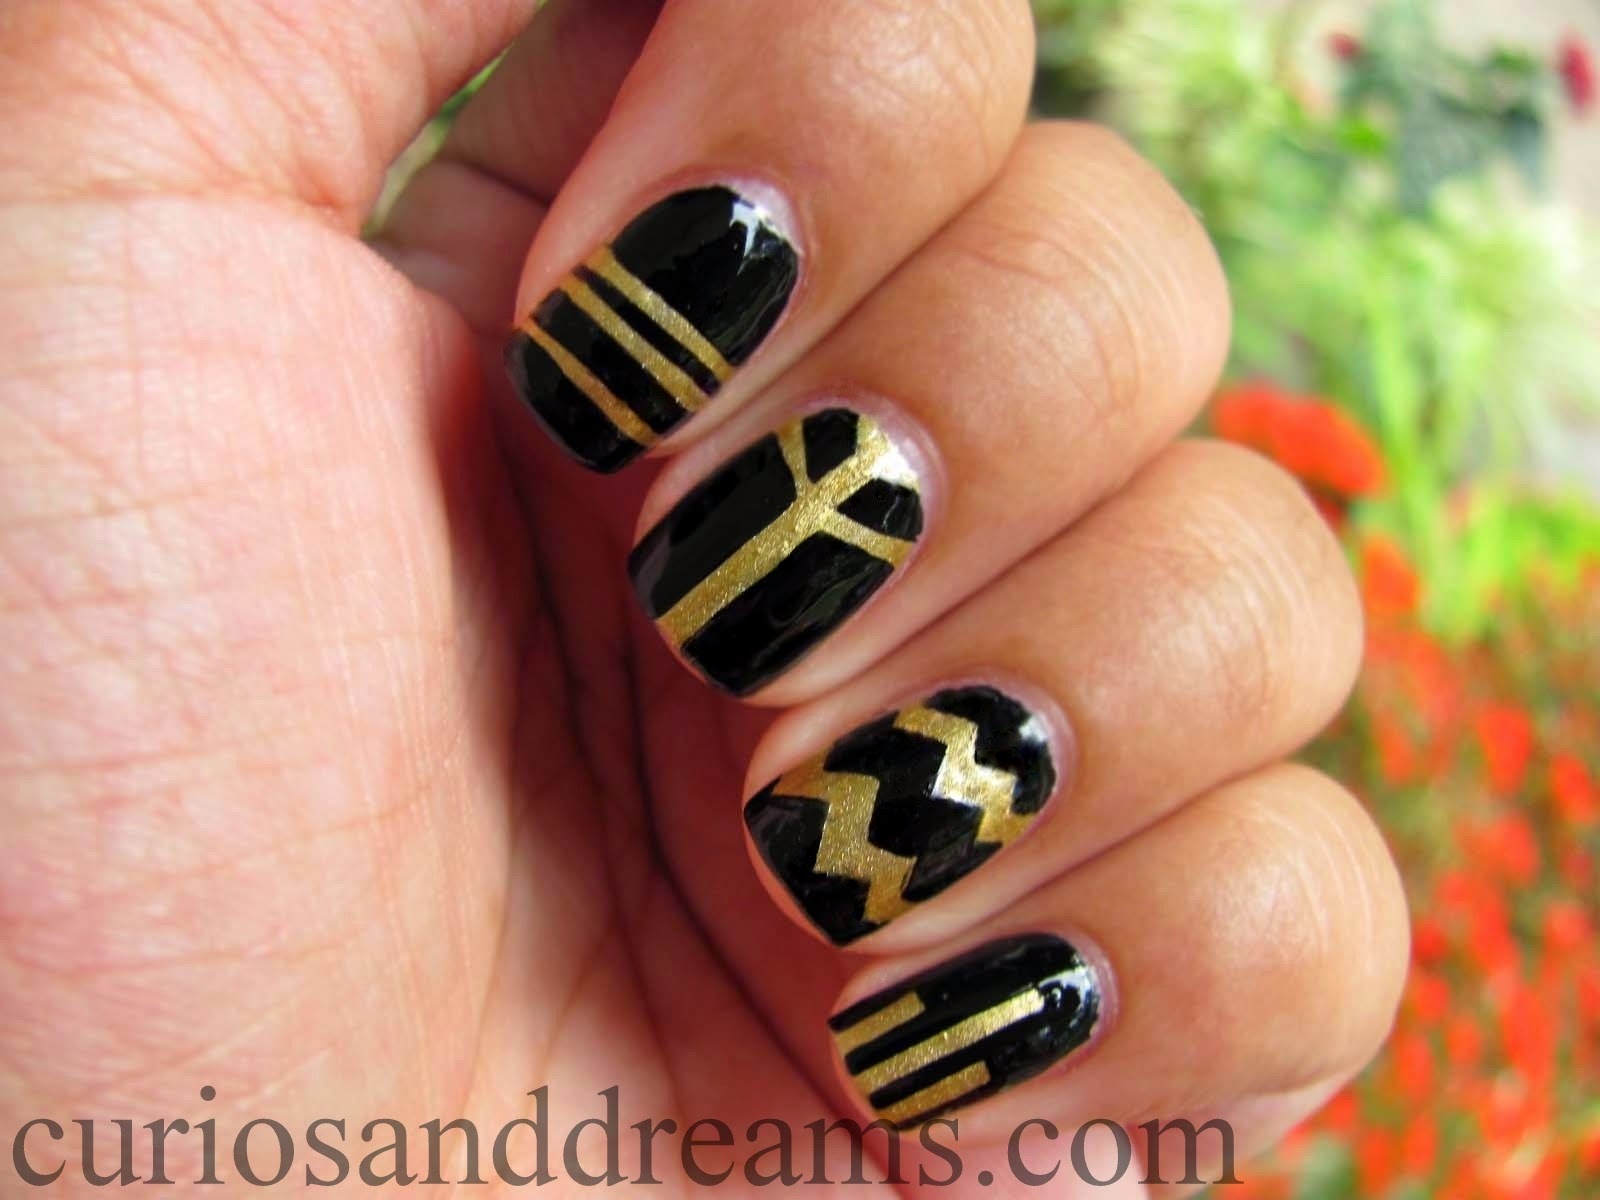 2. Elegant Matte Black and Gold Nail Design - wide 5